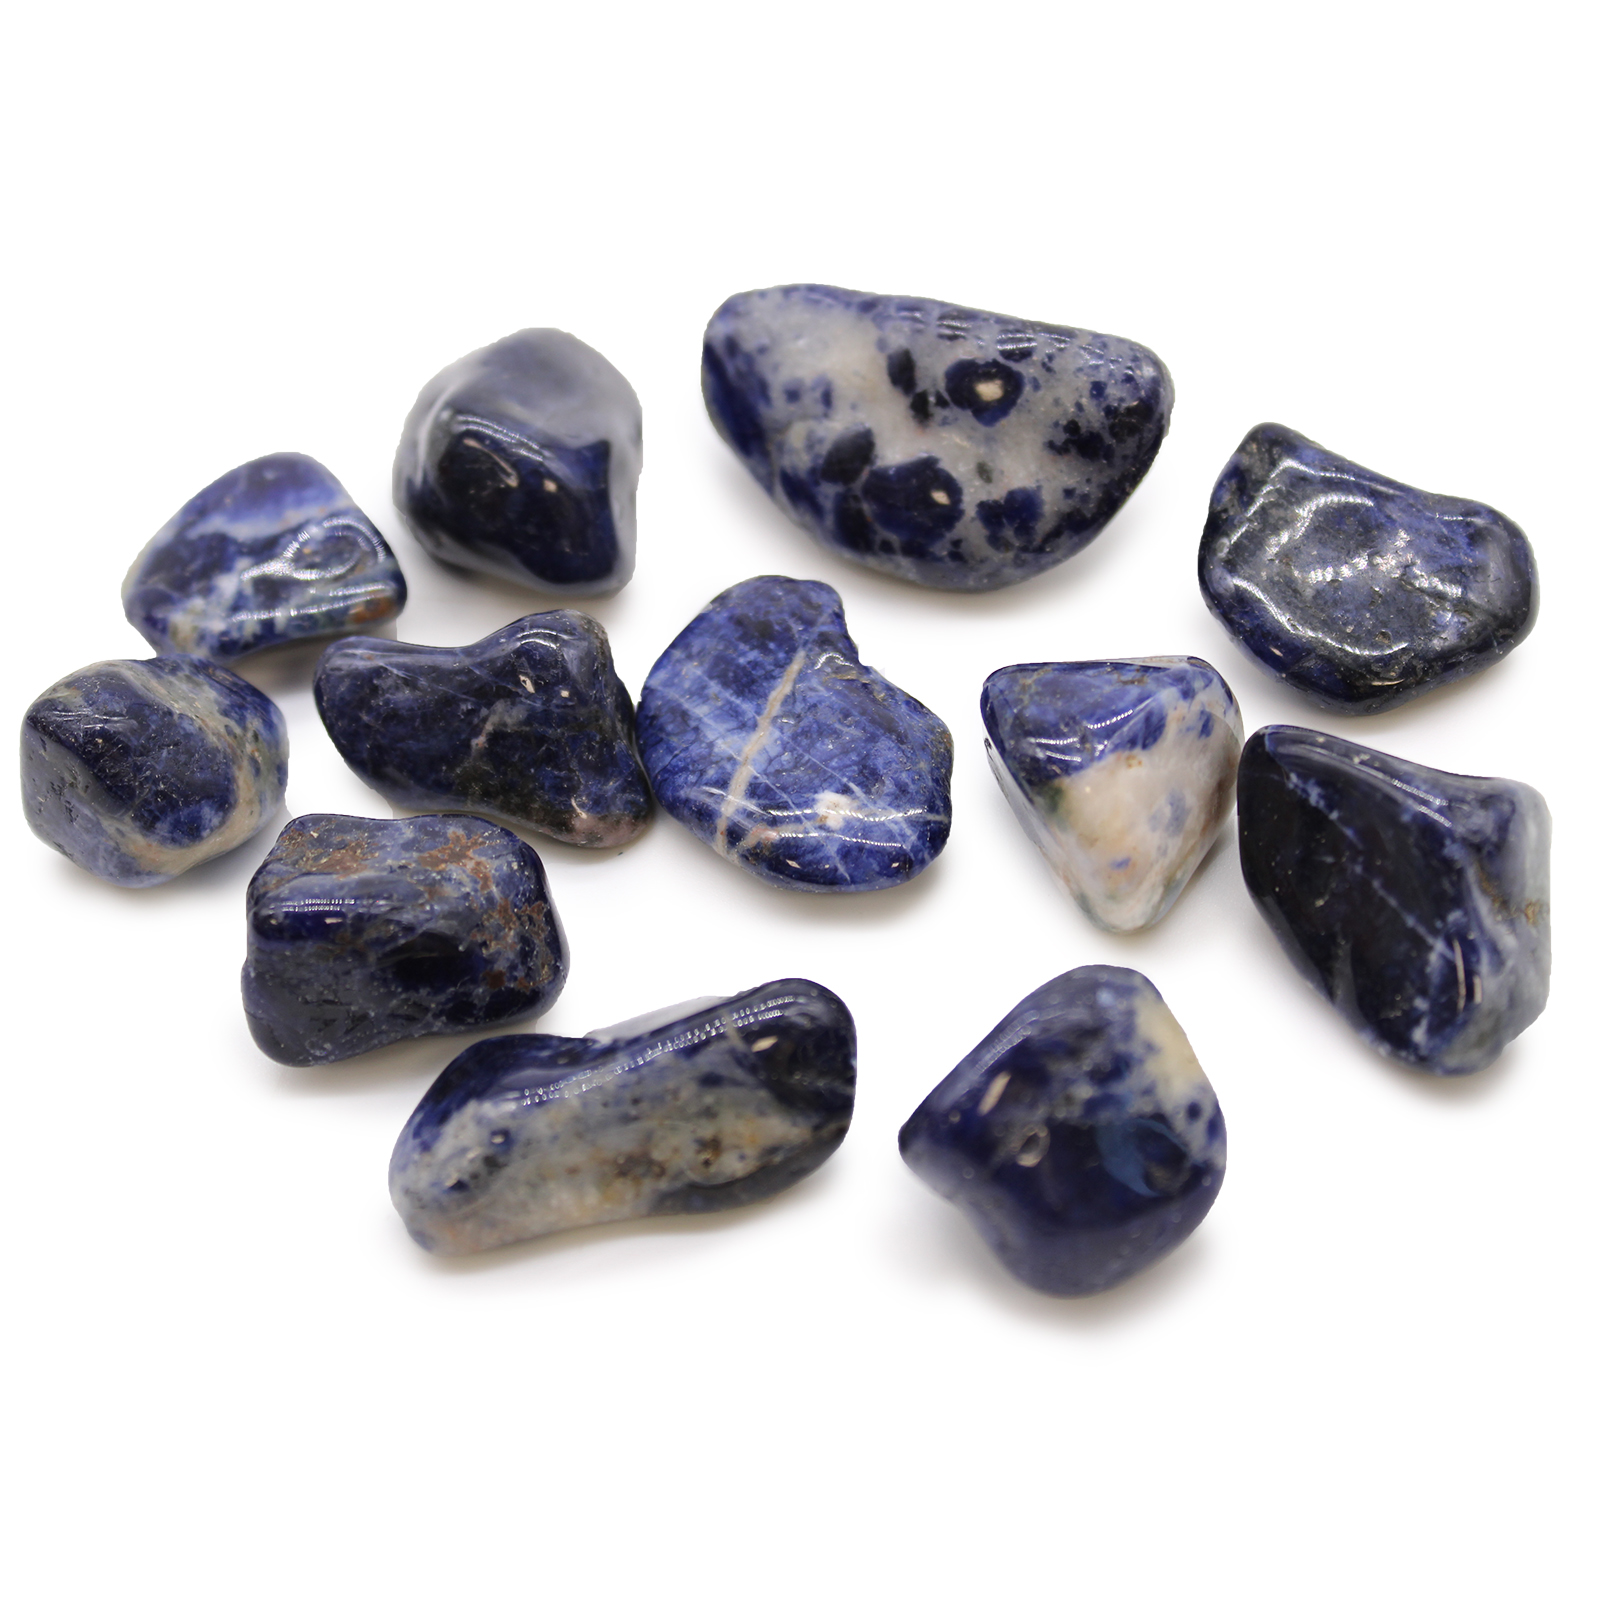 12 x Medium African Tumble Stones - Sodalite - Pure Blue